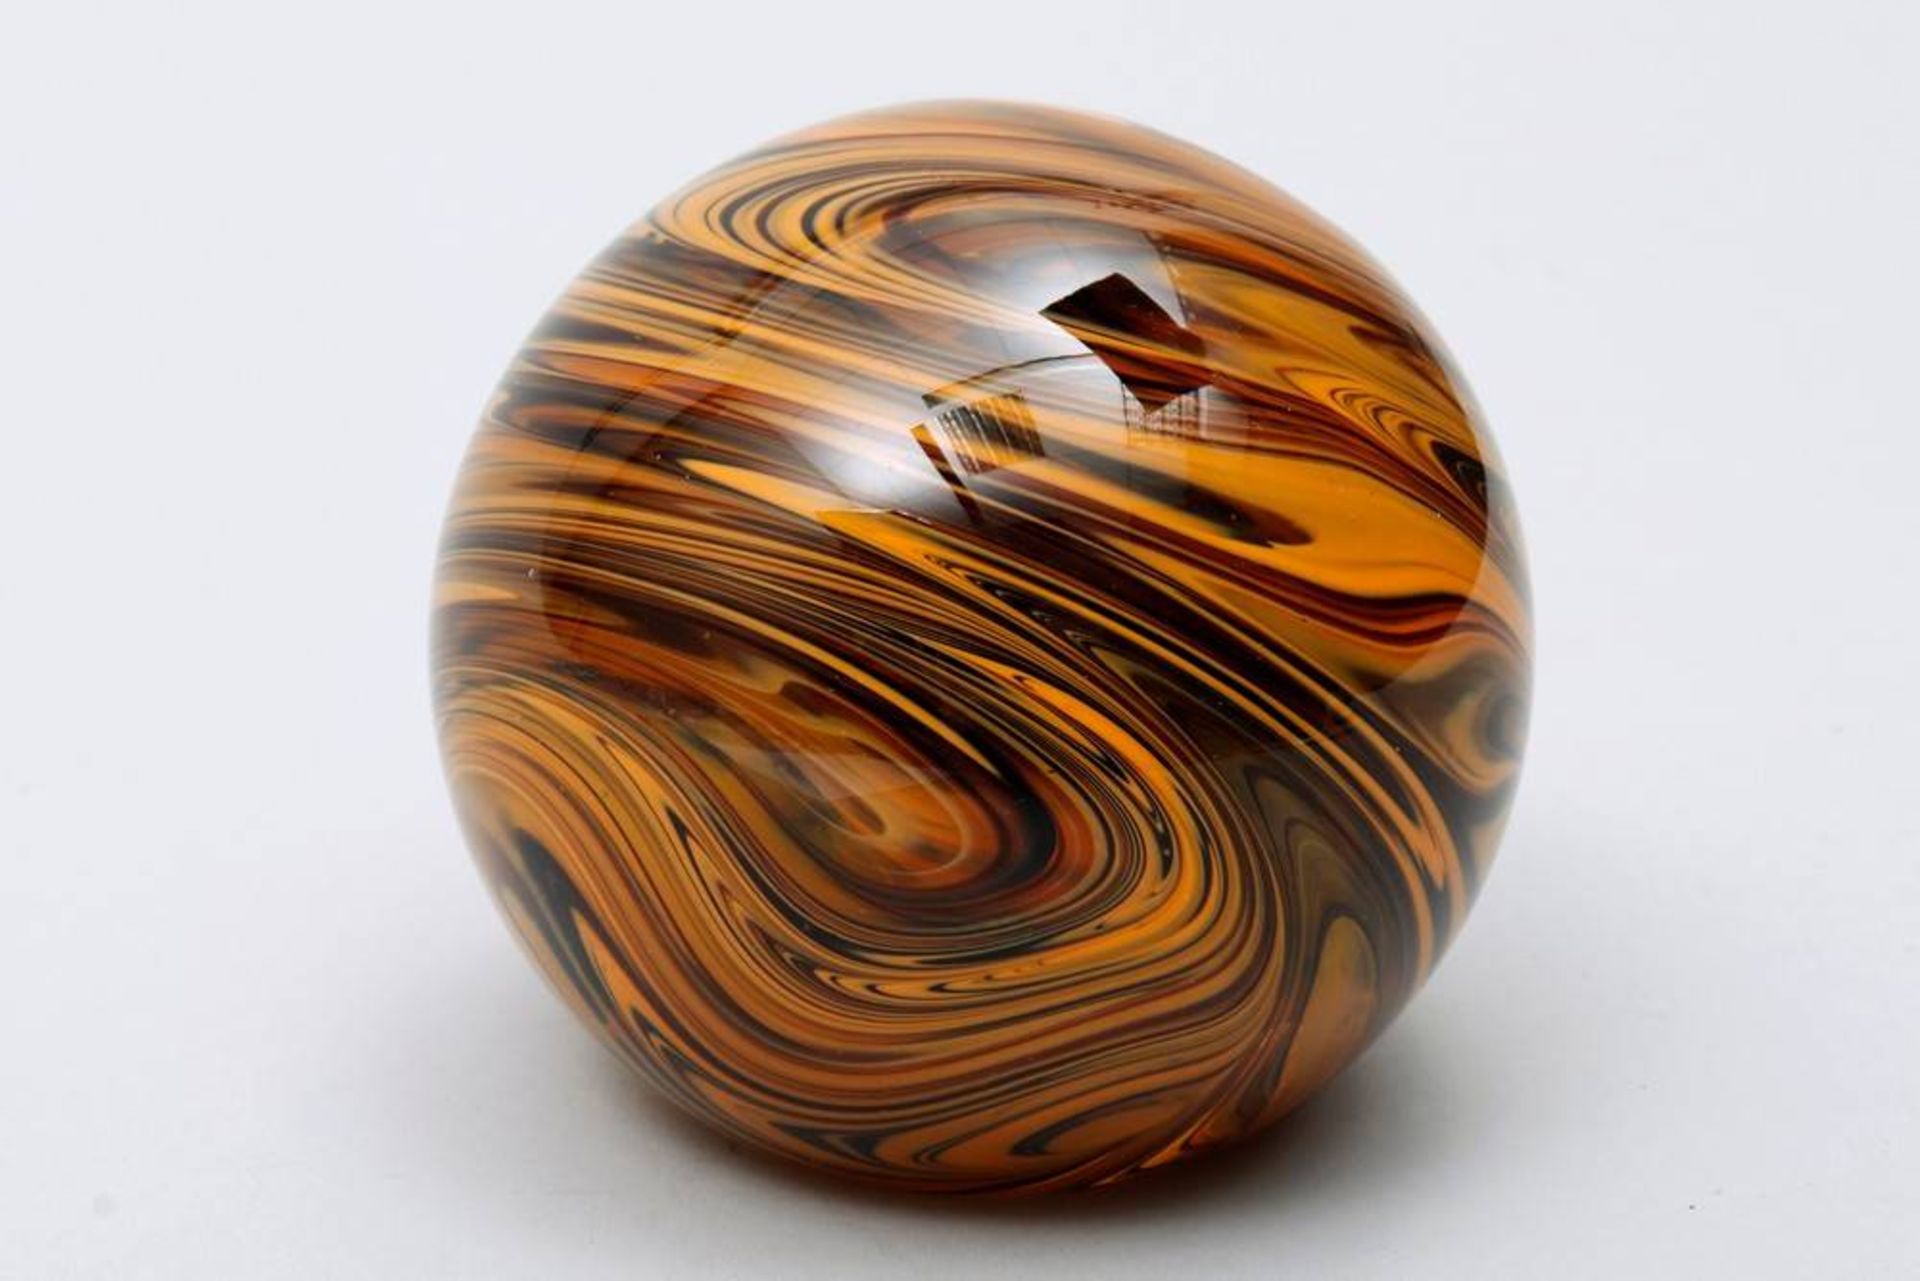 Paperweightca. 1960s, orange and brown inclusions, globe shaped, Heinz Glas - Kleintettau, makers - Bild 3 aus 3